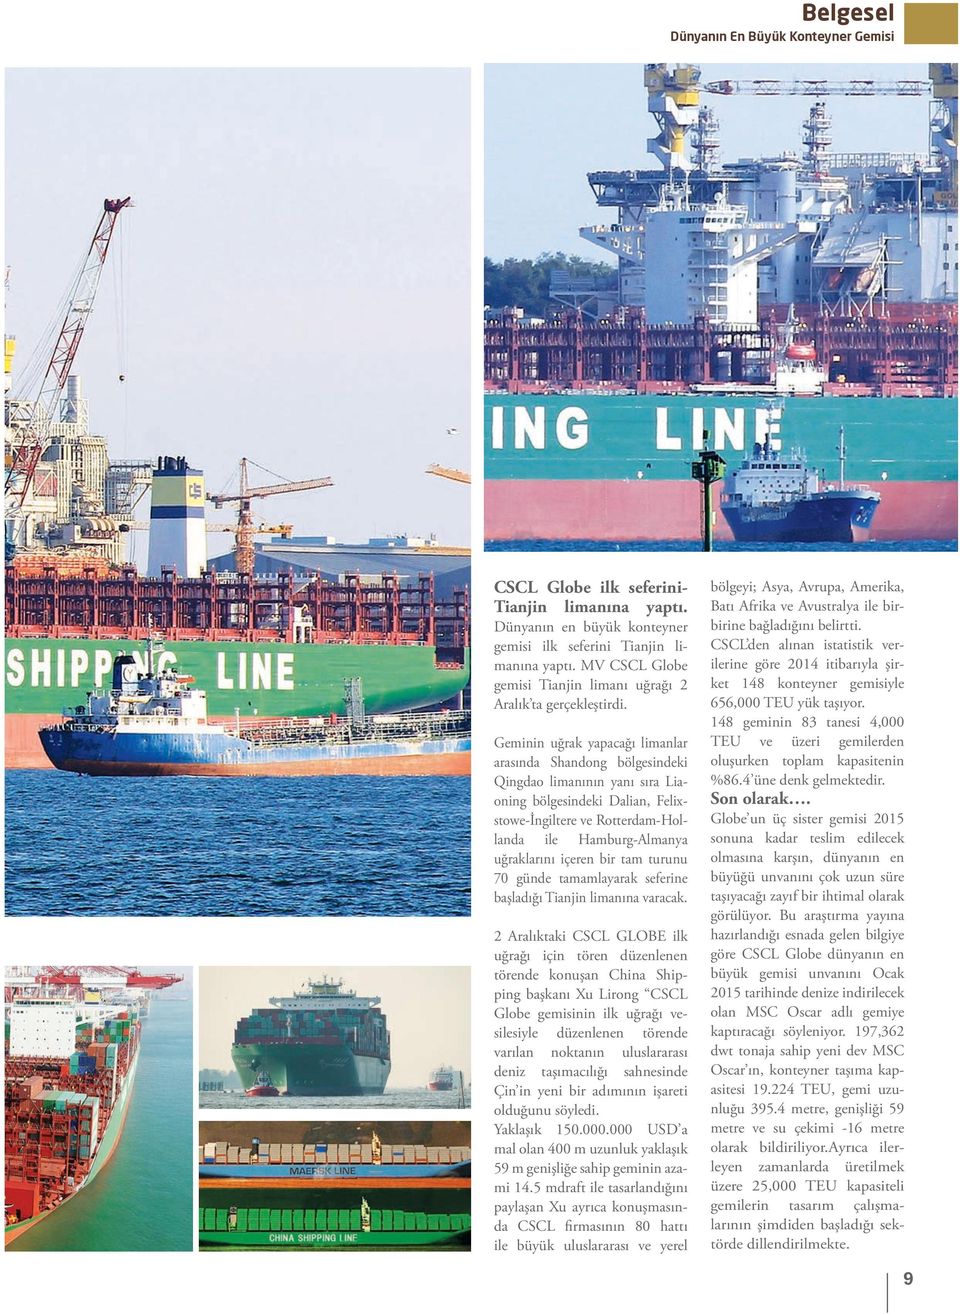 Geminin uğrak yapacağı limanlar arasında Shandong bölgesindeki Qingdao limanının yanı sıra Liaoning bölgesindeki Dalian, Felixstowe-İngiltere ve Rotterdam-Hollanda ile Hamburg-Almanya uğraklarını